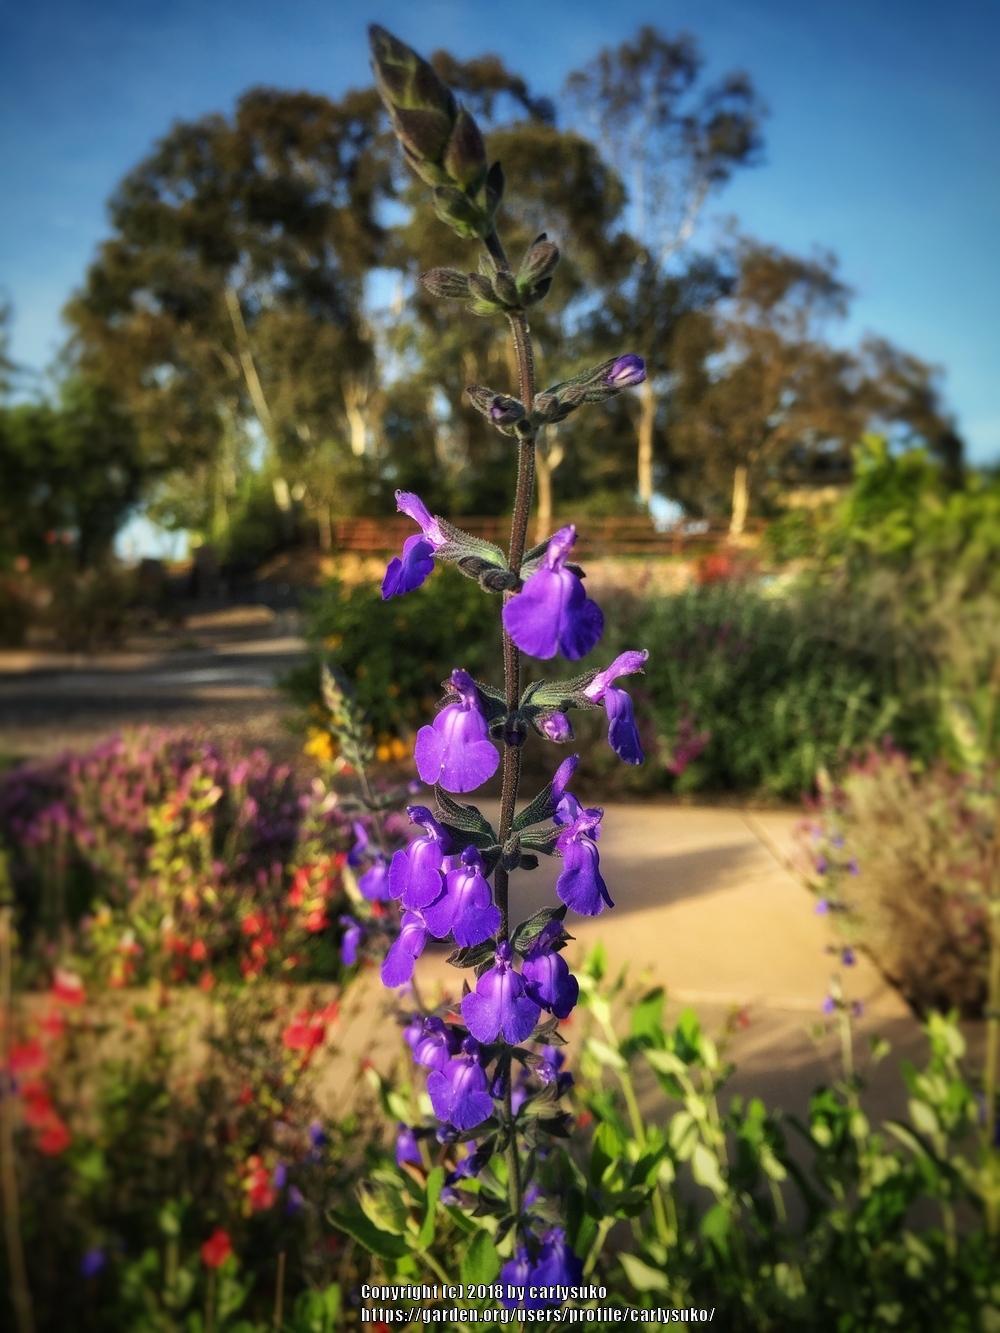 Photo of Blue Oak Sage (Salvia chamaedryoides) uploaded by carlysuko